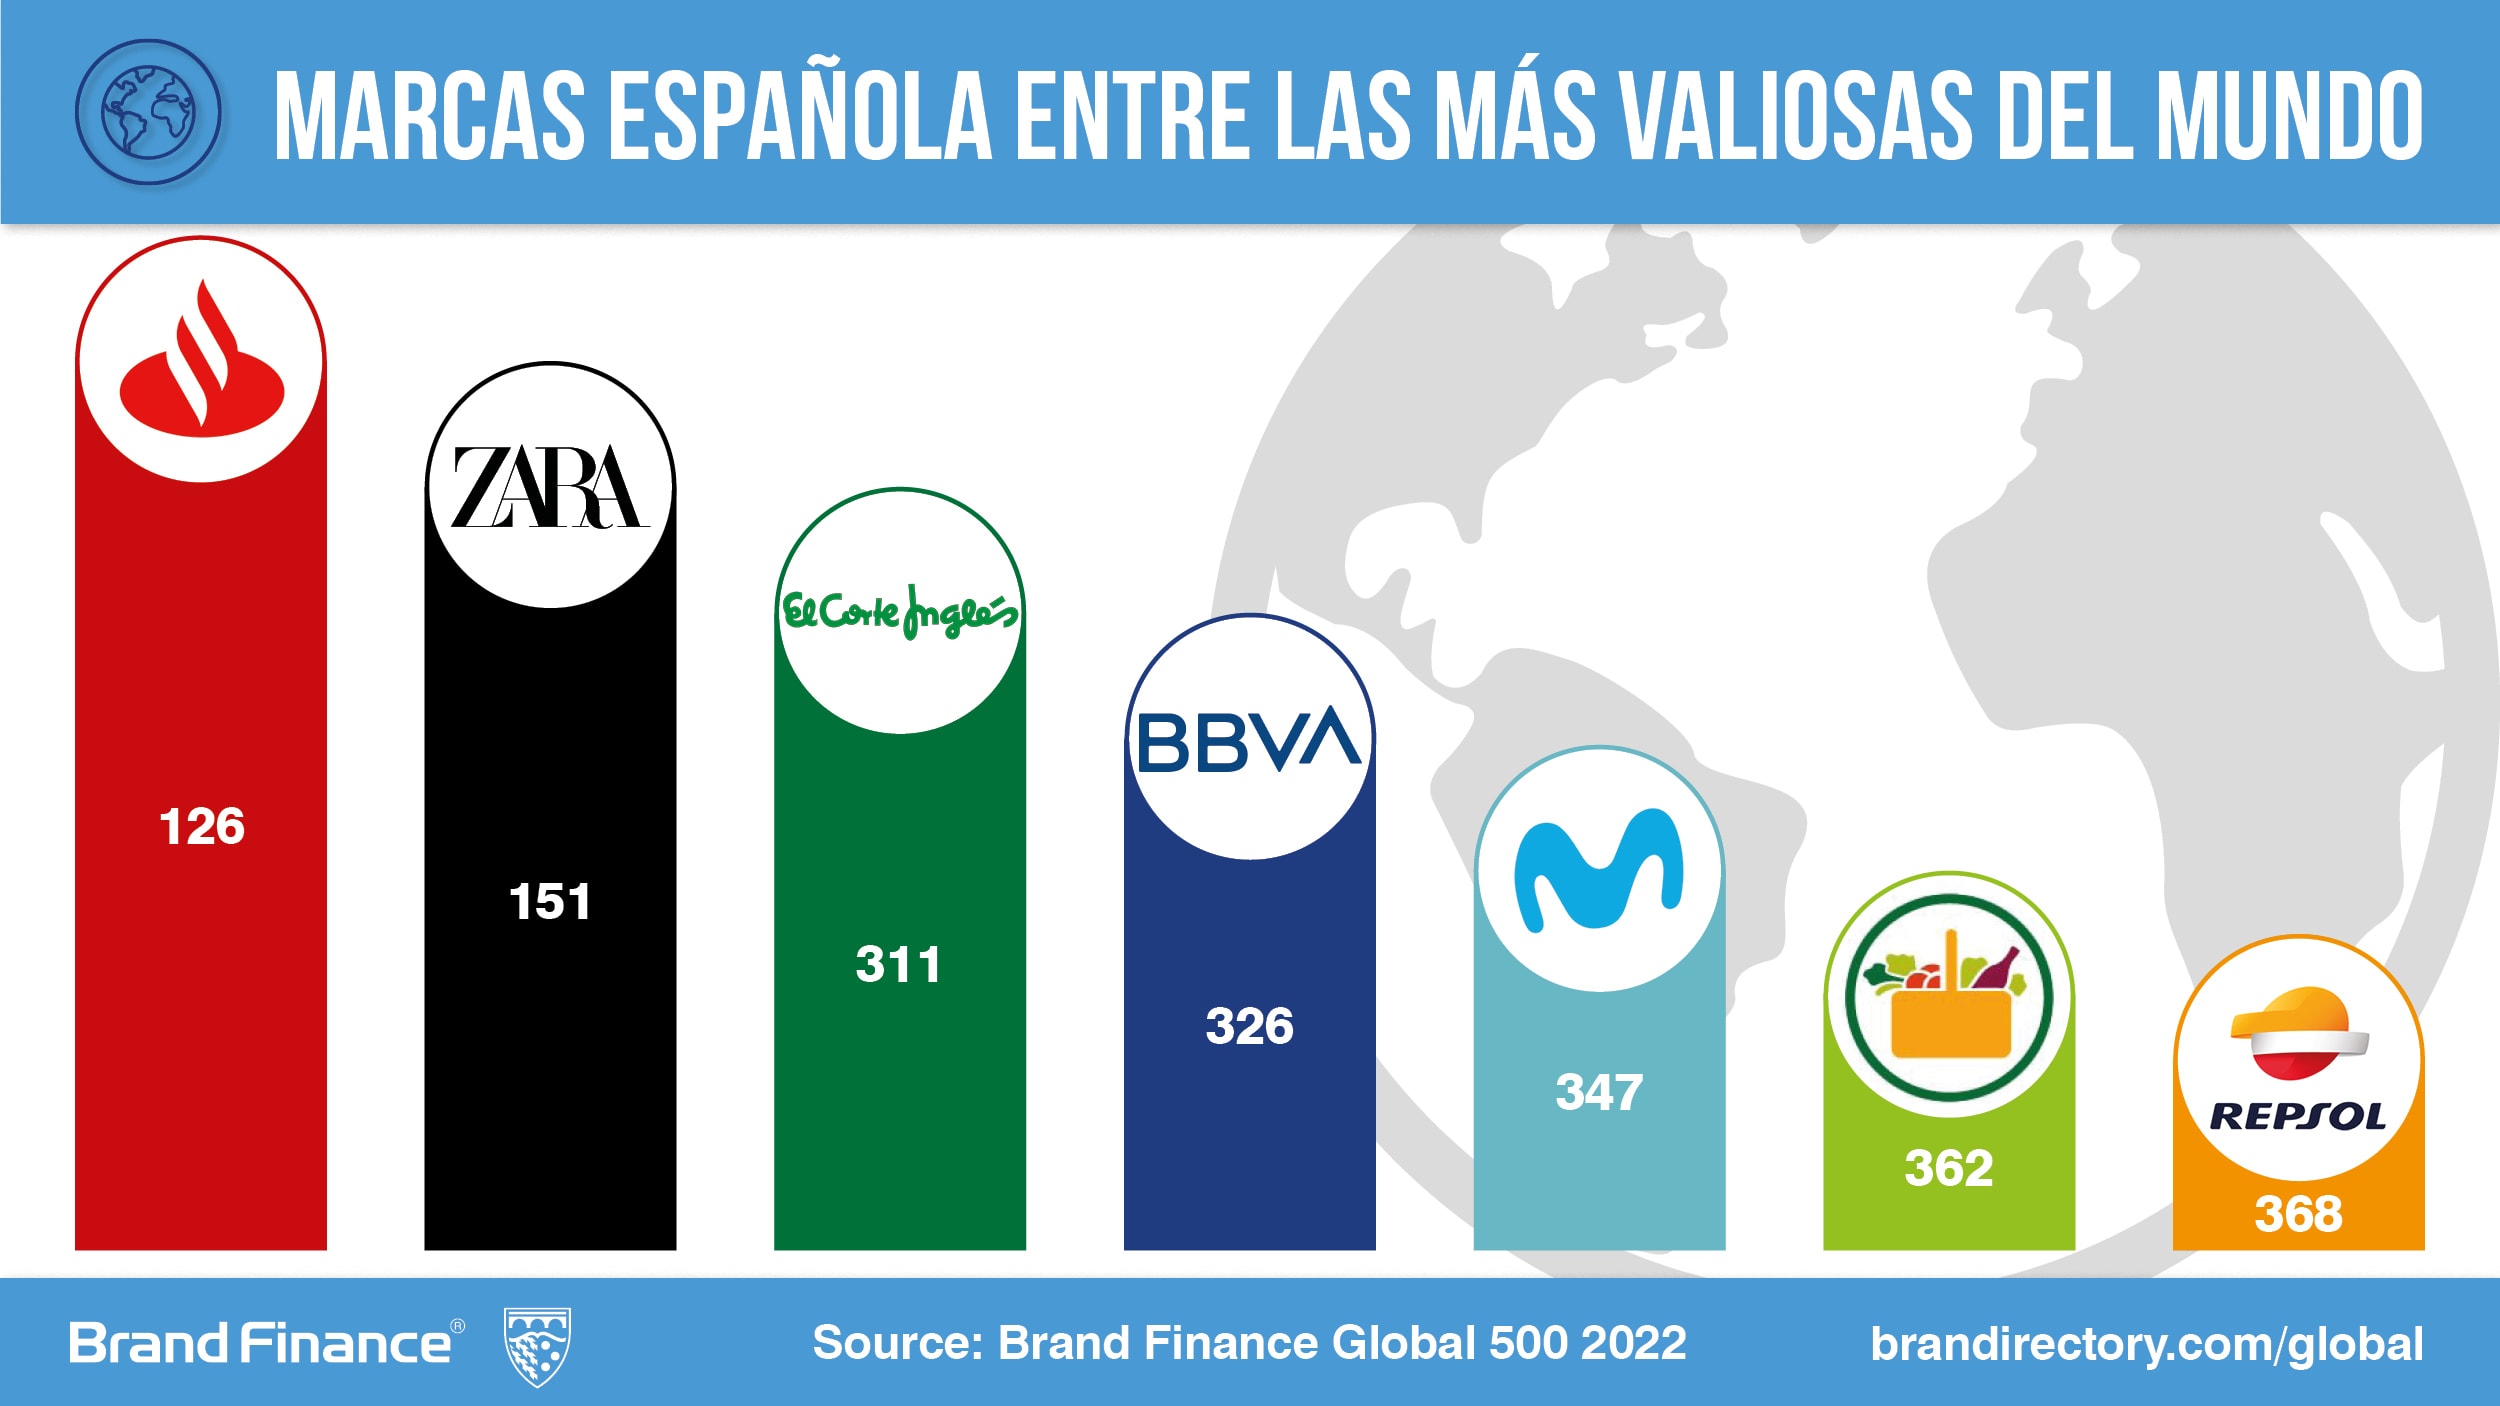 Las marcas españolas valiosas del mundo empiezan a recuperar el valor perdido con la pandemia según Brand Finance | Press Release | Brand Finance